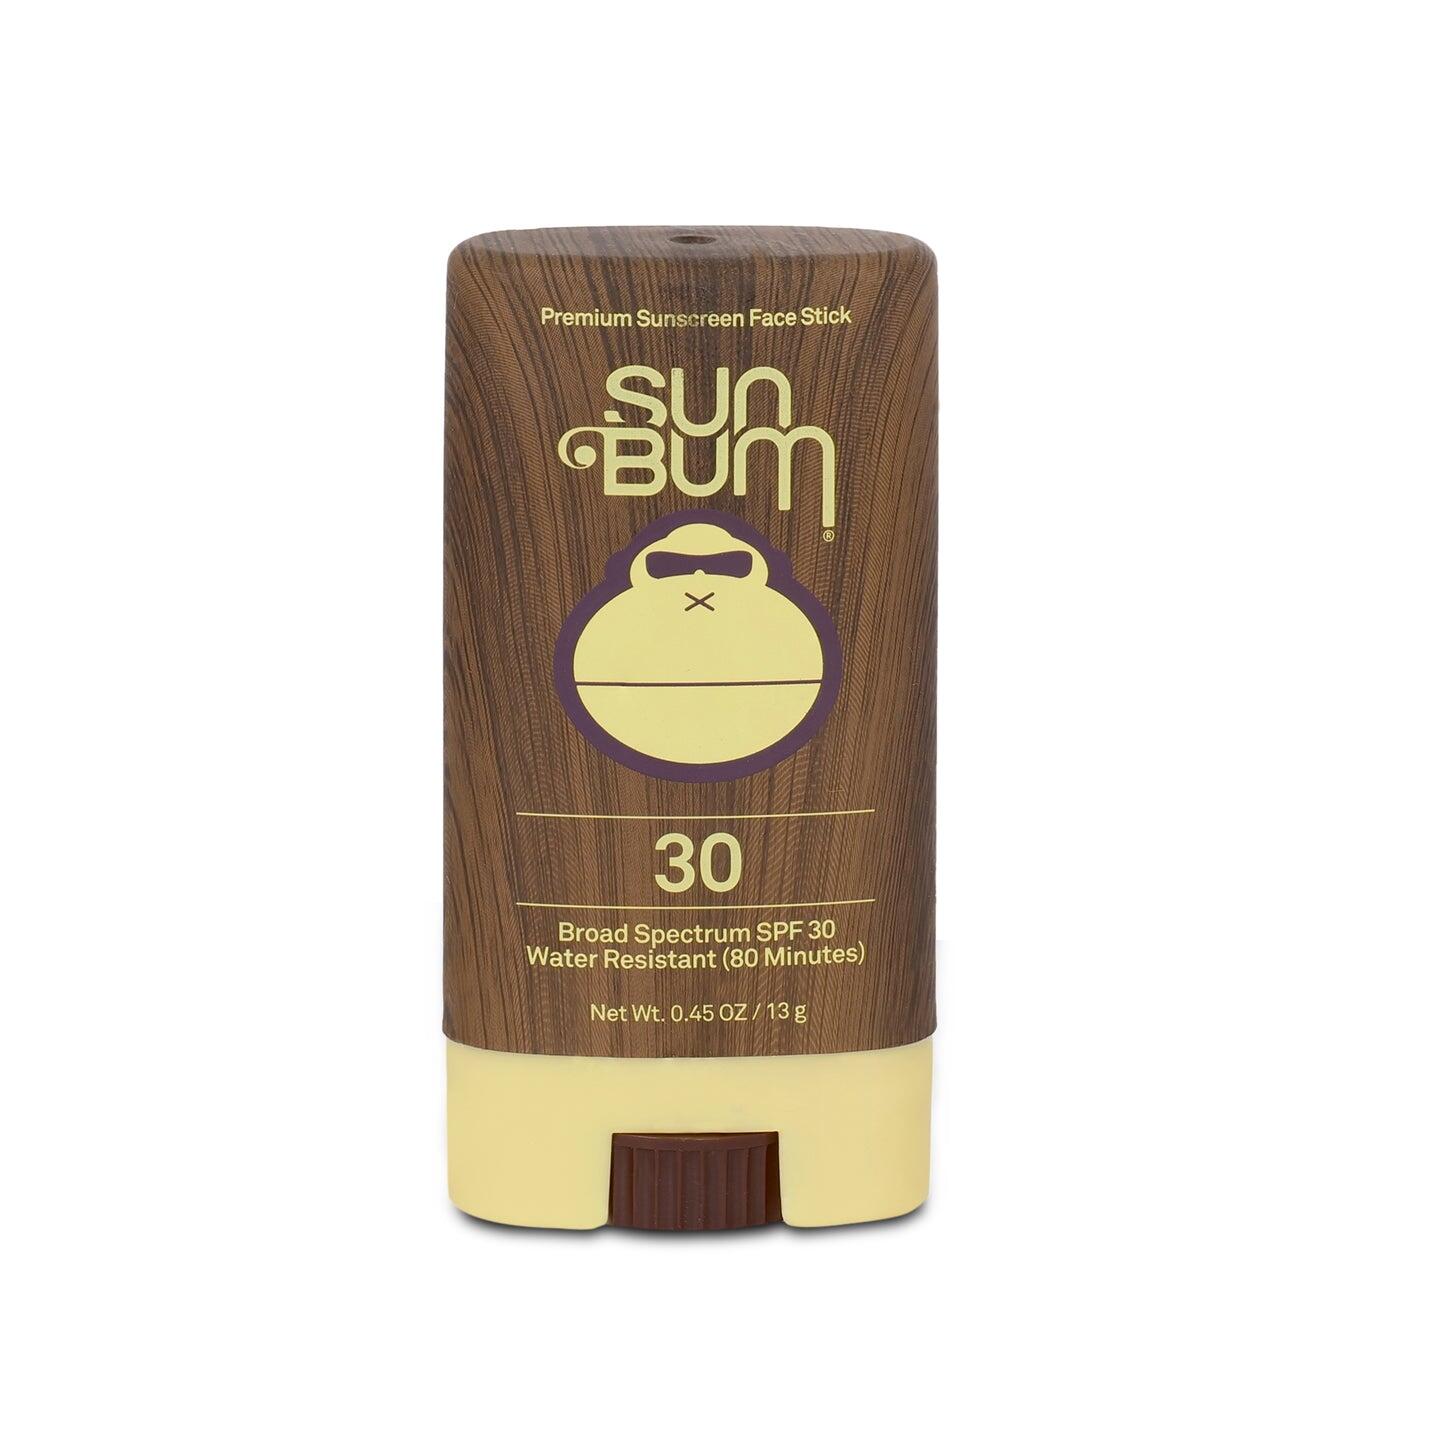 Sun Bum Original Sunscreen Stick SPF30